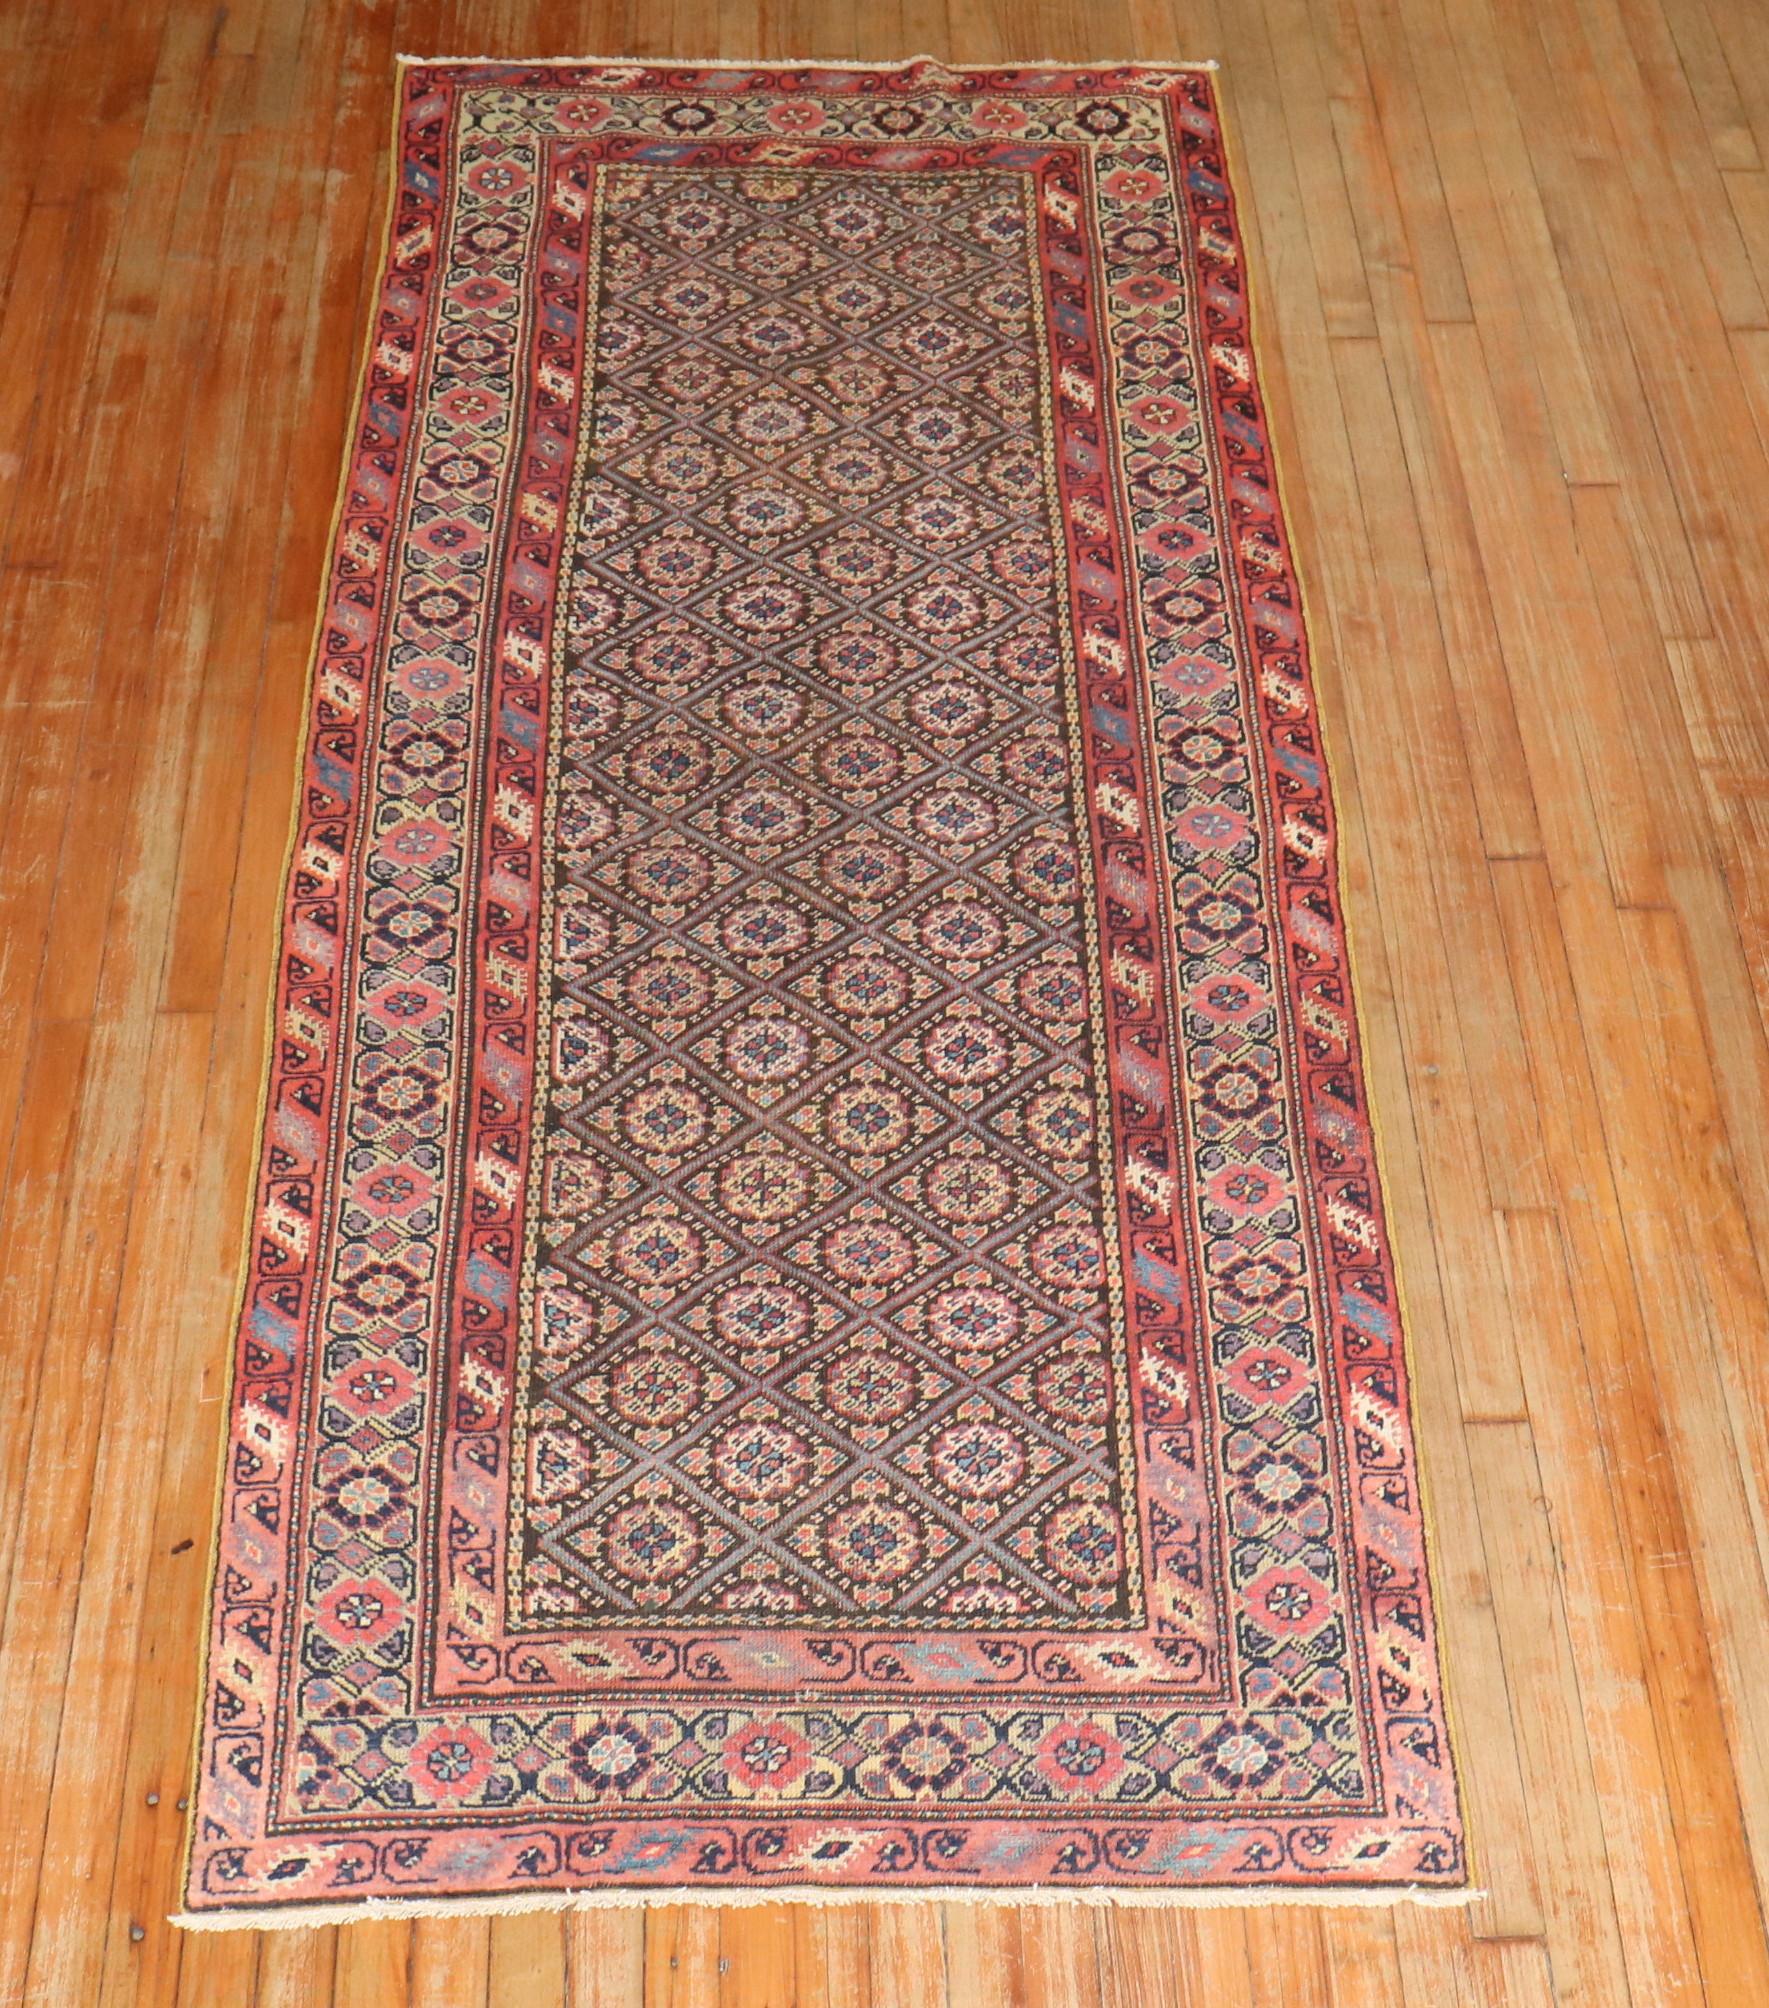 Ein authentischer handgefertigter antiker persischer Ferehan-Läufer.

In der Region Ferahan im westlichen Zentralpersien entwickelte sich im 19. Jahrhundert eine ausgeprägte Teppichwebetradition, die geometrische Einflüsse der umliegenden Stämme